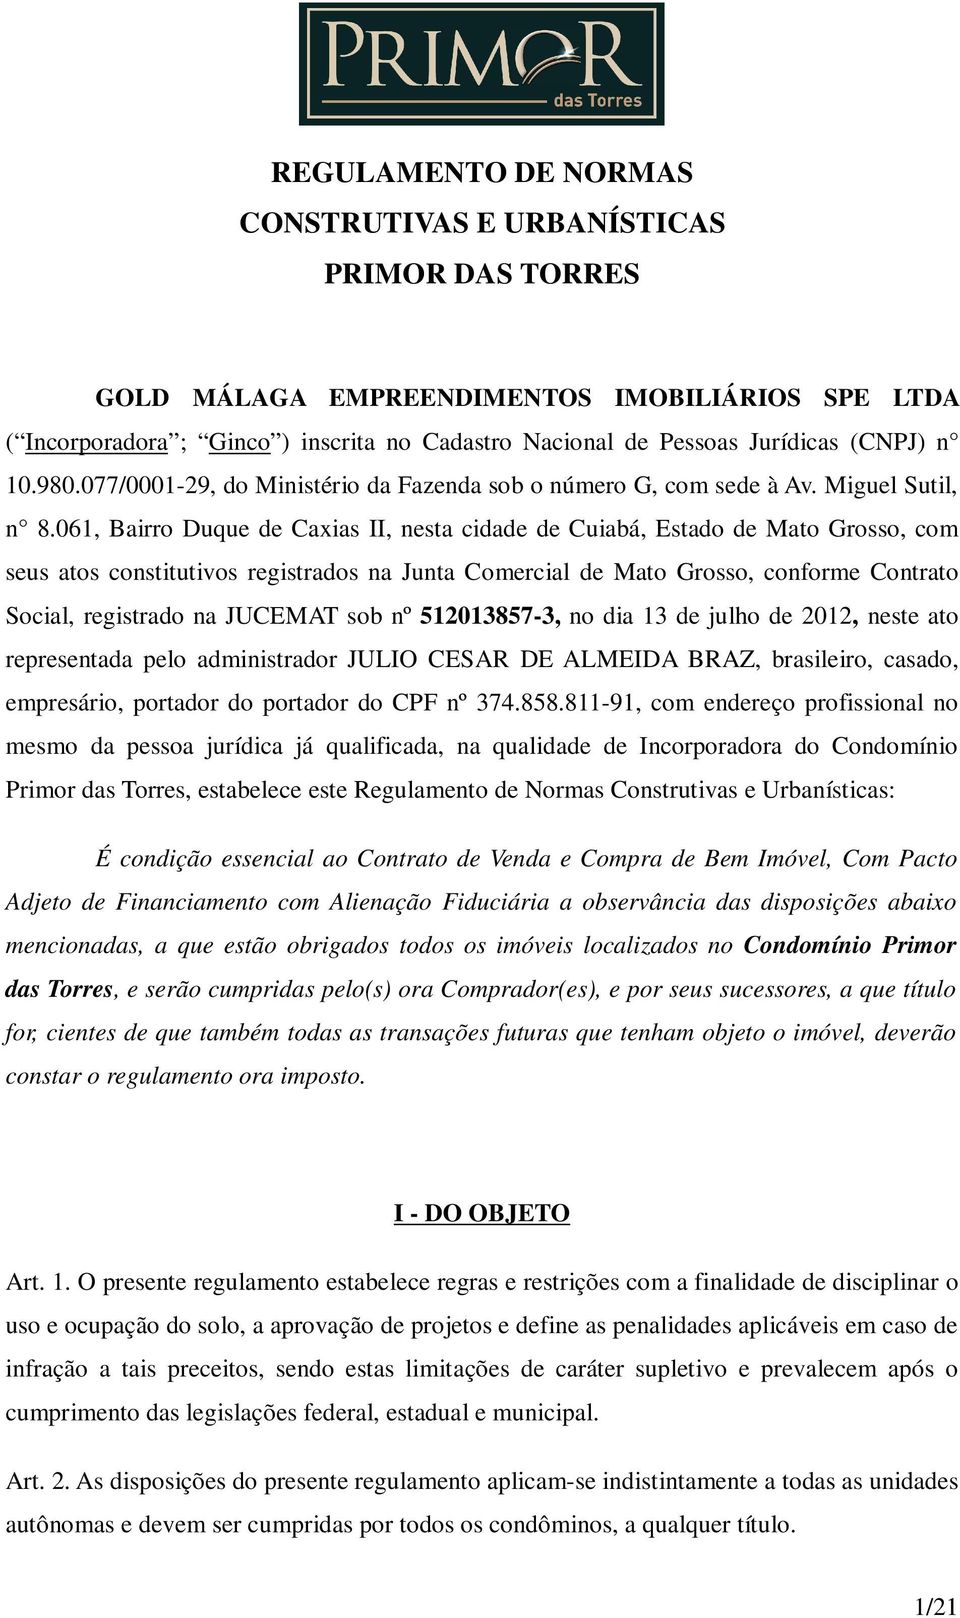 061, Bairro Duque de Caxias II, nesta cidade de Cuiabá, Estado de Mato Grosso, com seus atos constitutivos registrados na Junta Comercial de Mato Grosso, conforme Contrato Social, registrado na